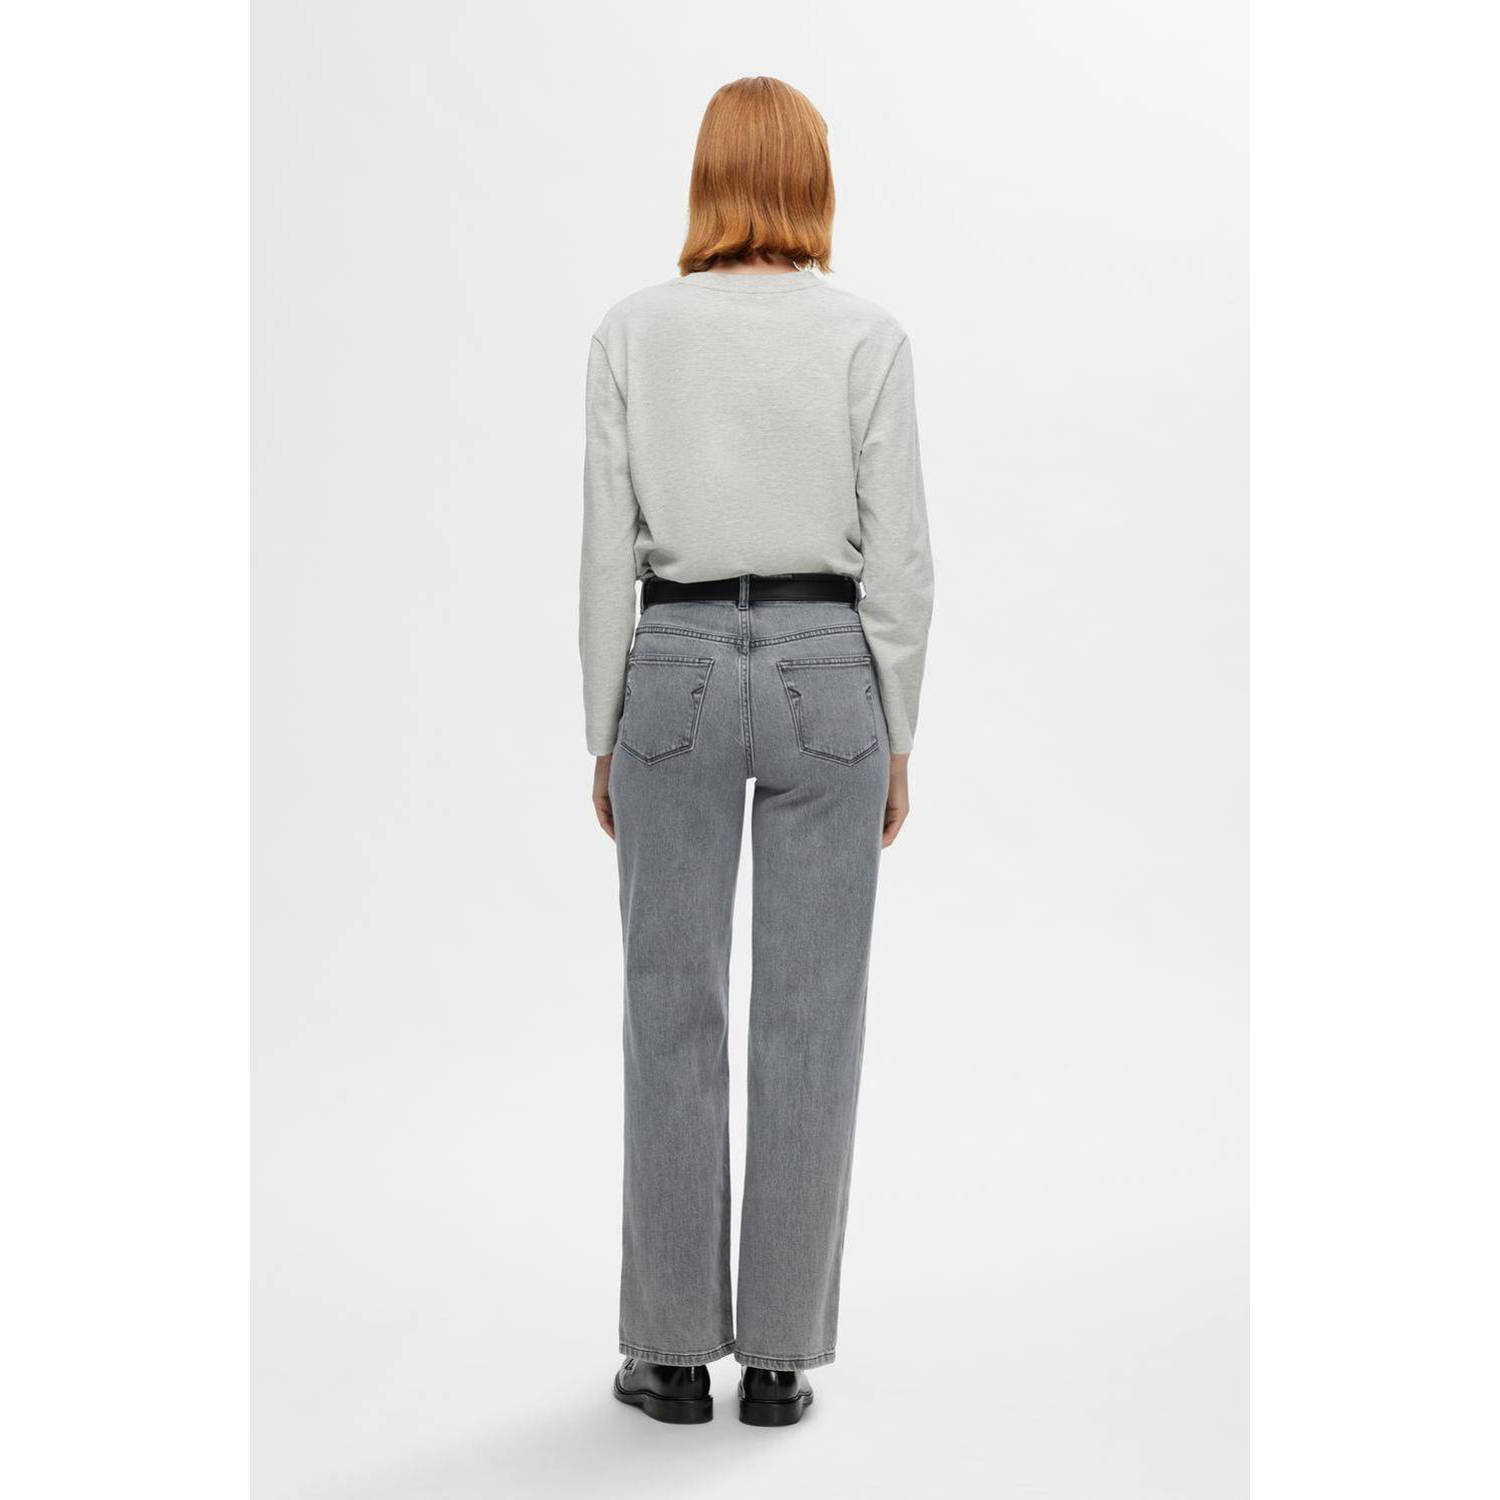 SELECTED FEMME high waist straight jeans SLFALICE grey denim